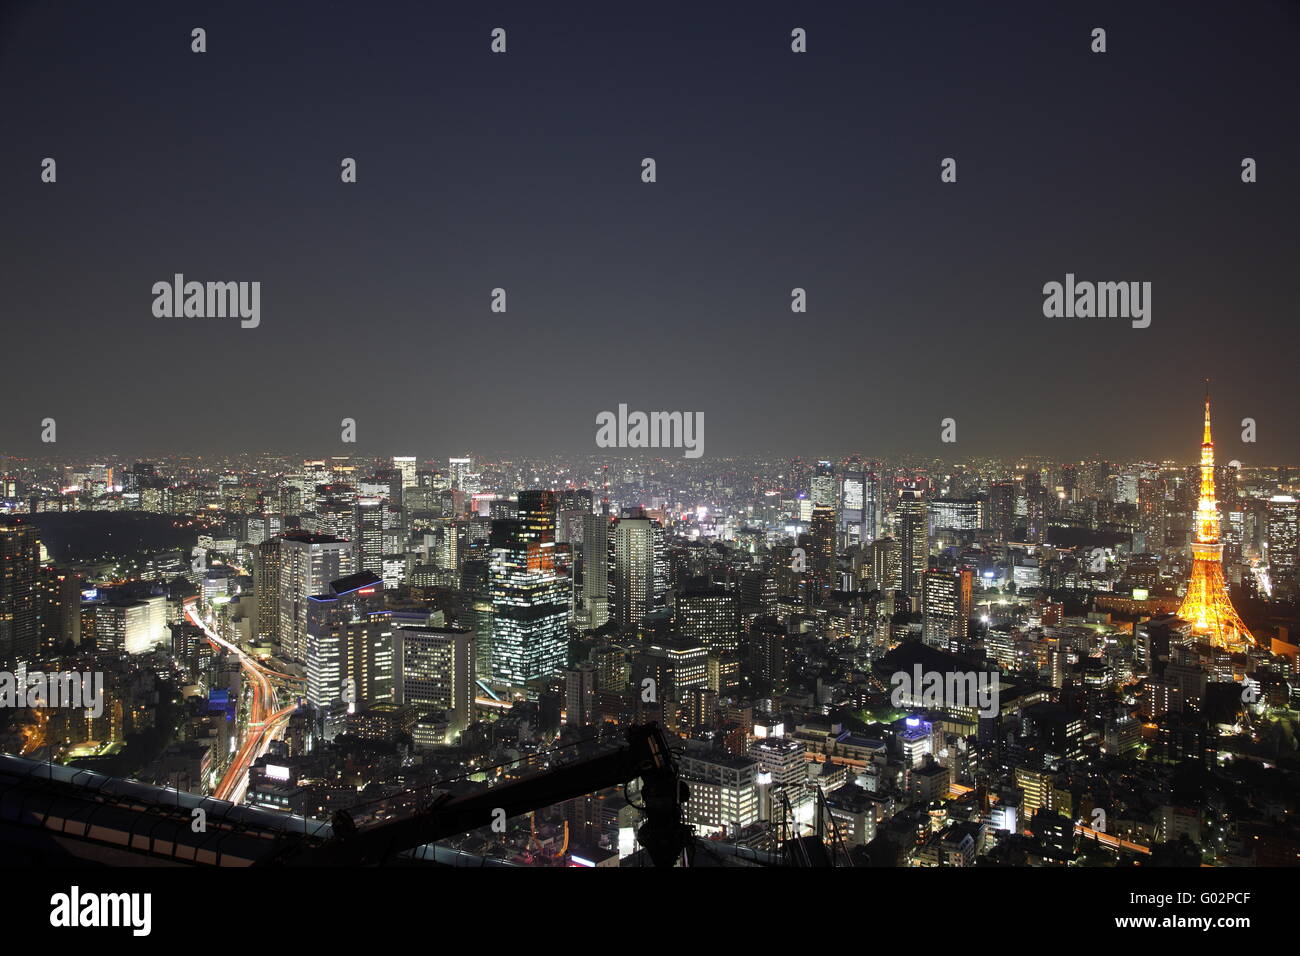 La ville de Tokyo au Japon dans la nuit Banque D'Images